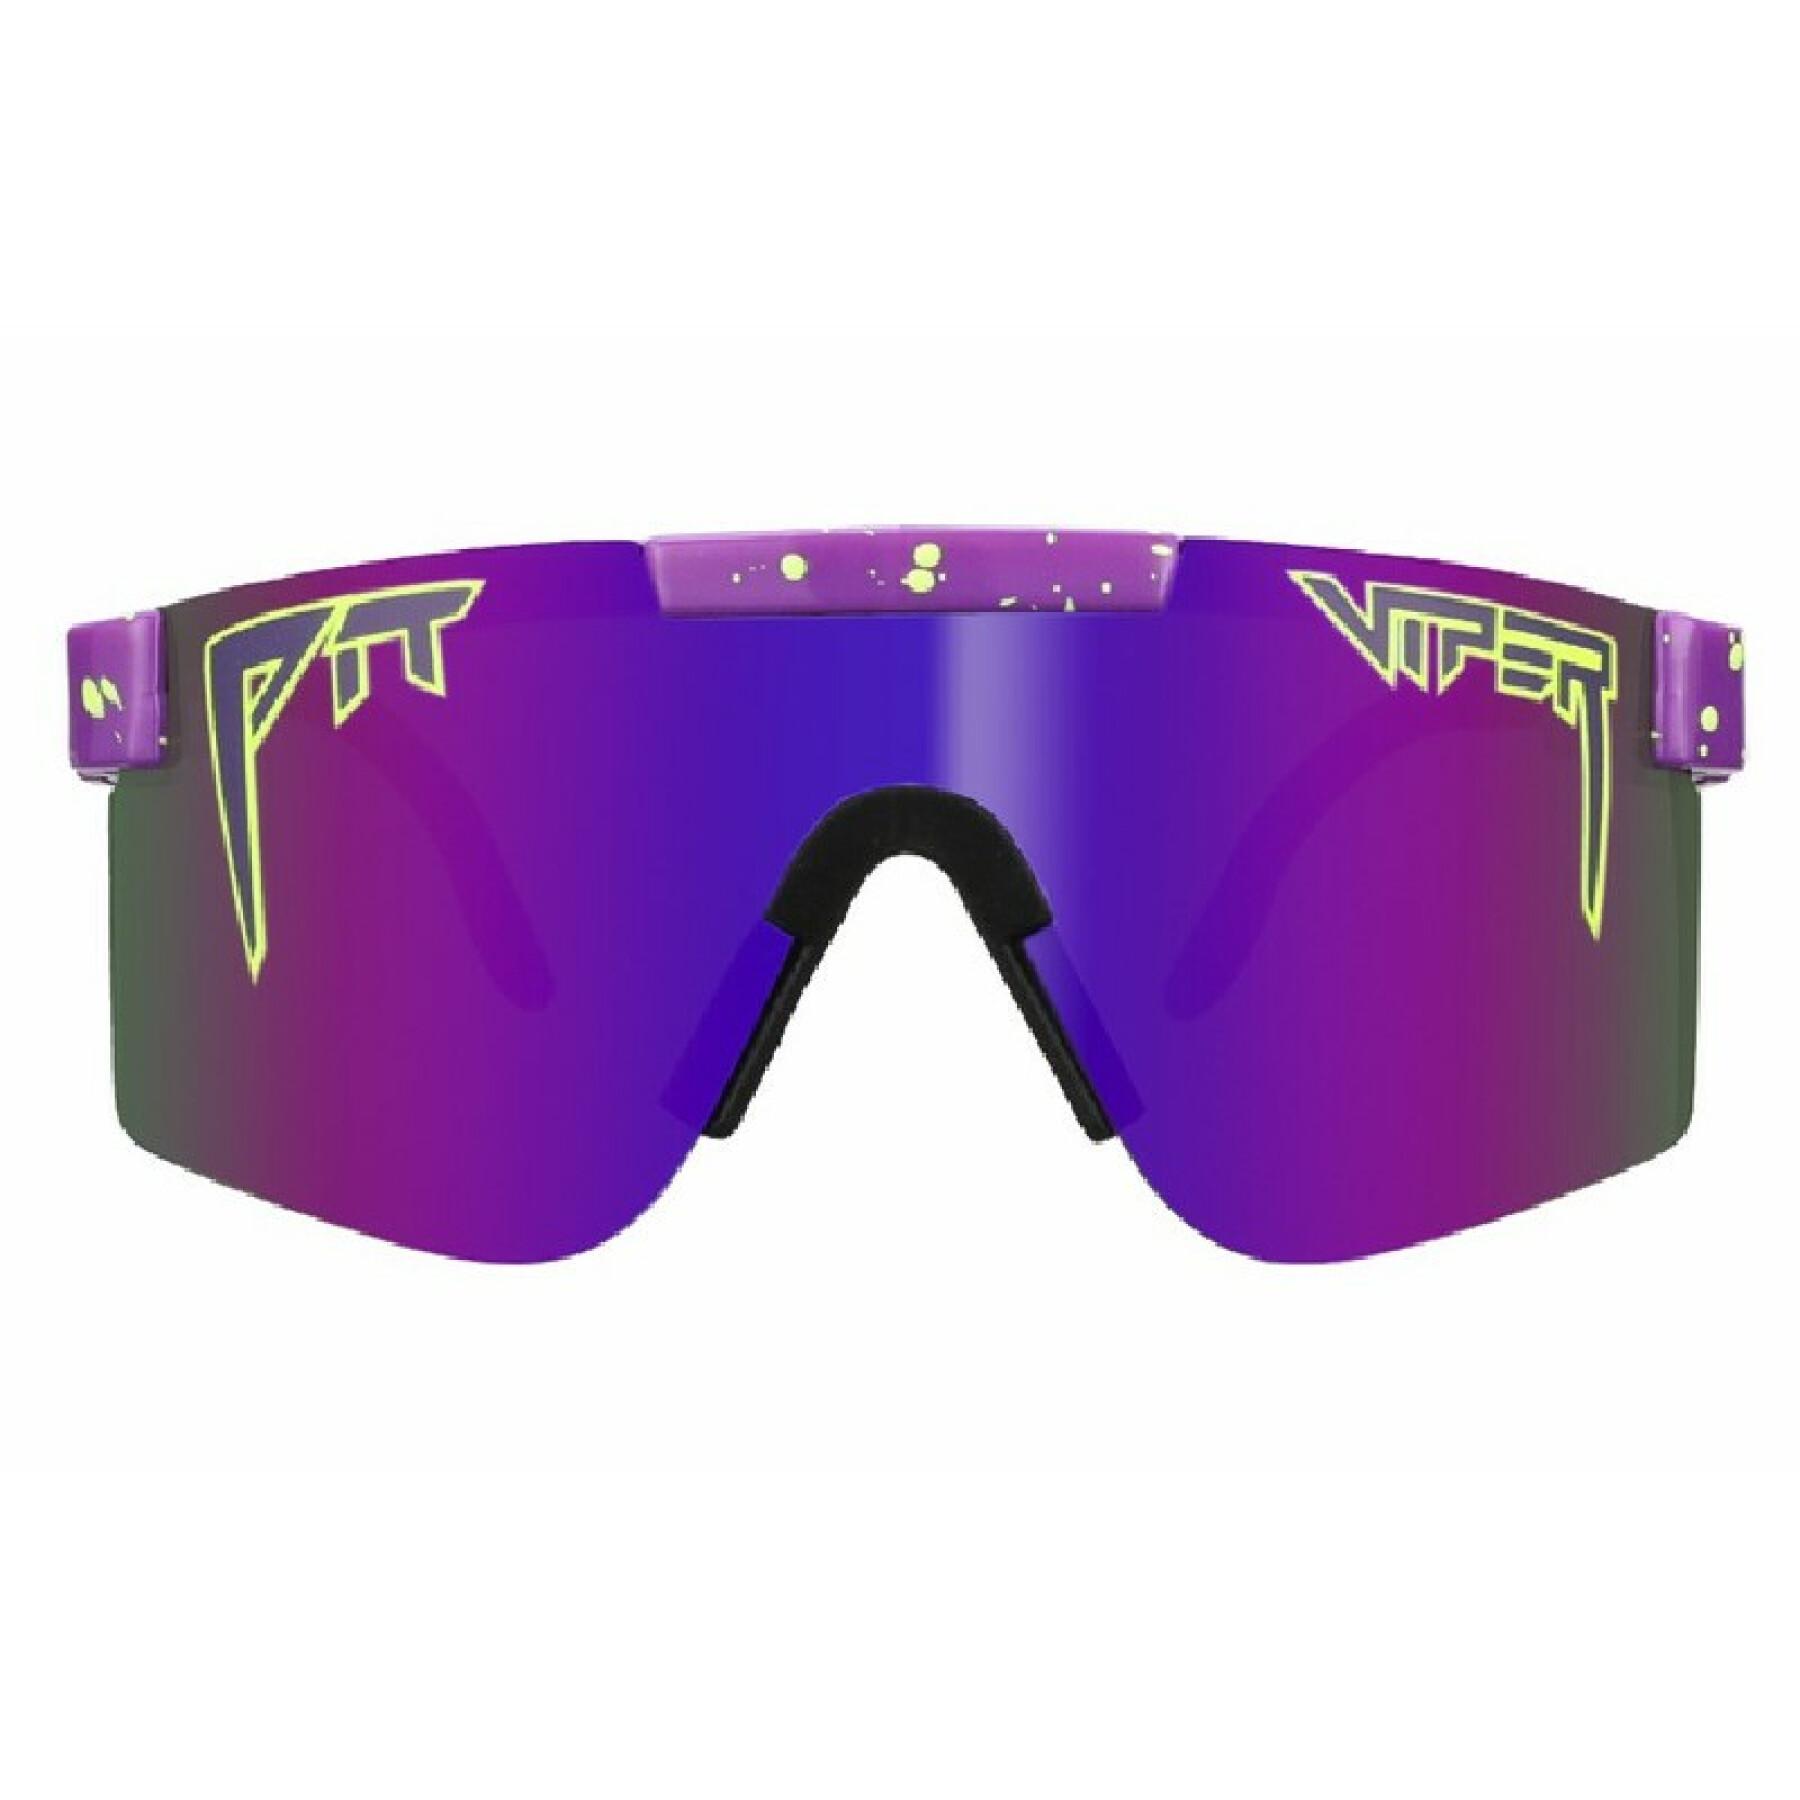 Original polarisierte Sonnenbrille Pit Viper The Donatello